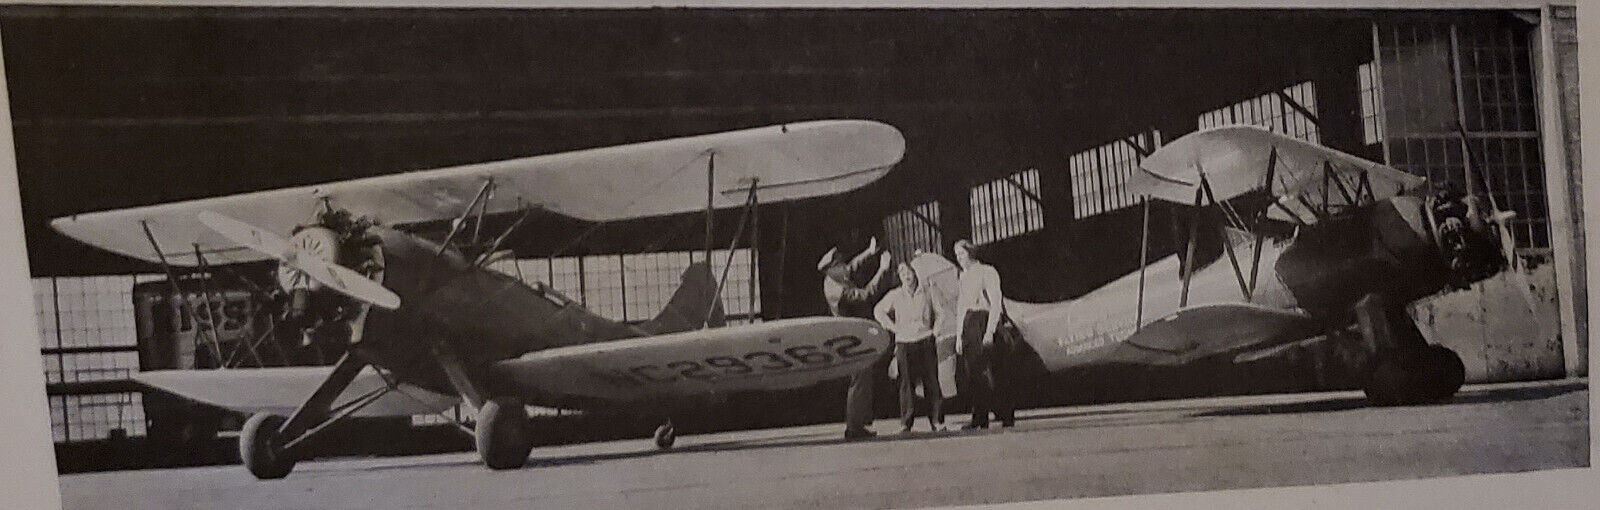 1941 WACO UPF-7 Trainer Airplane Advertisement 1B24